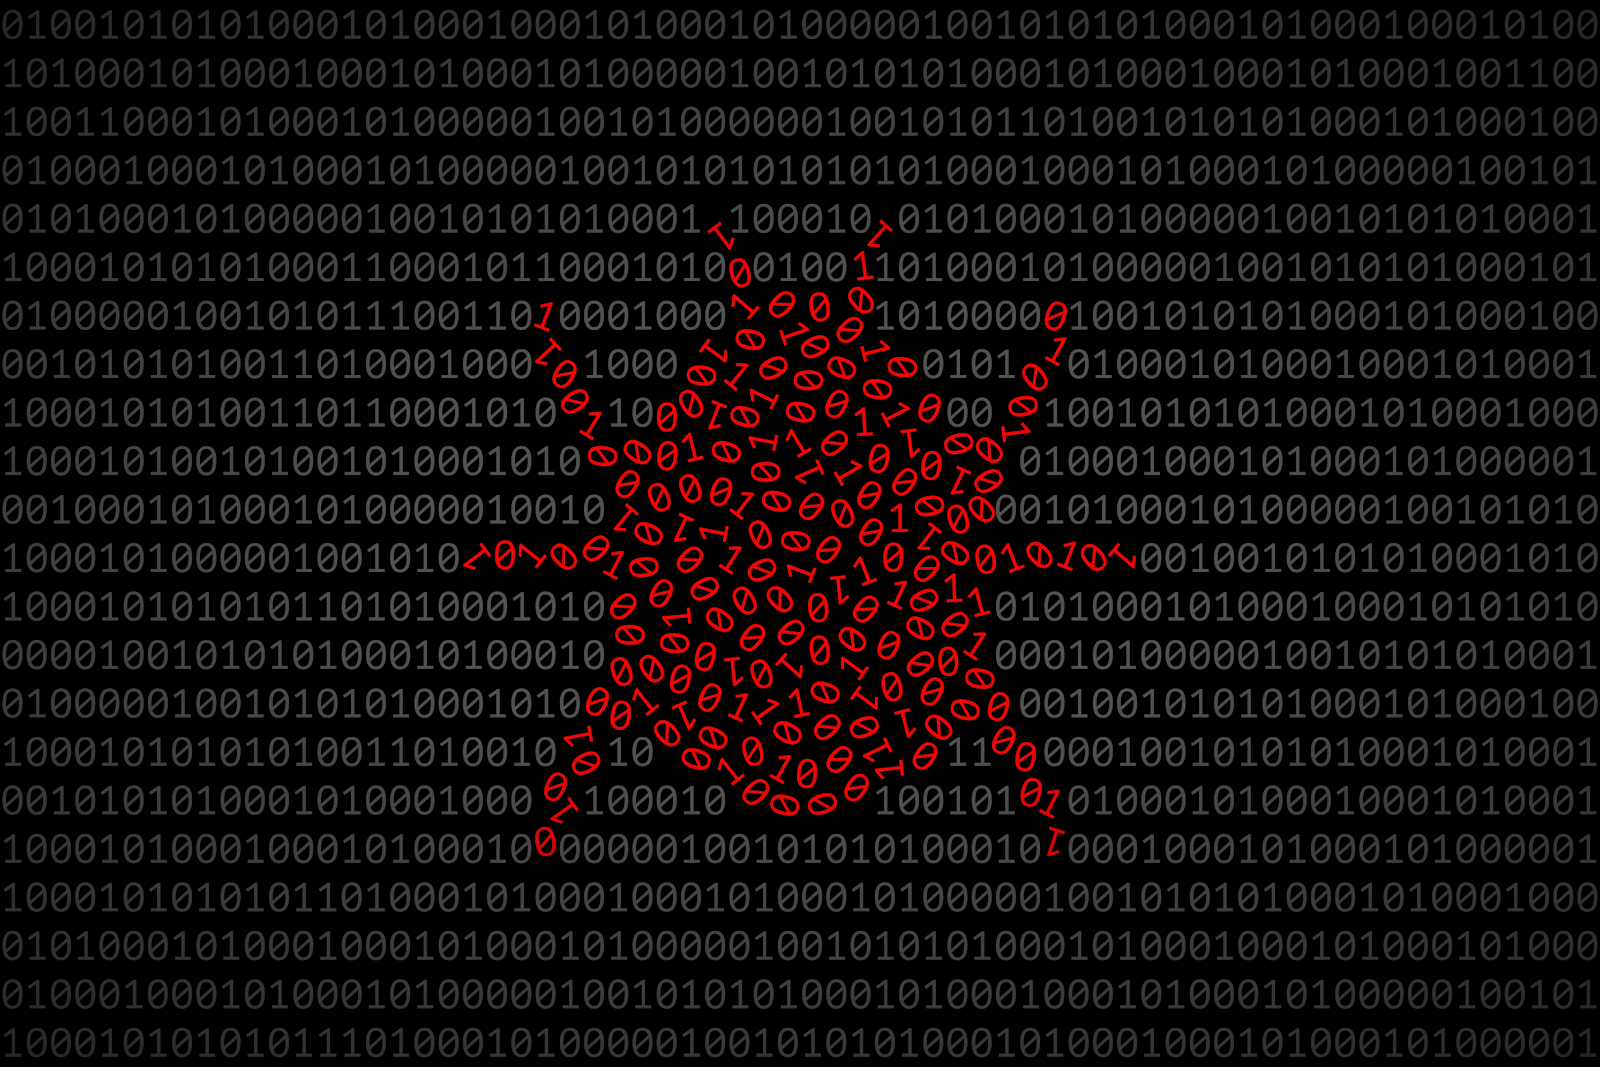 Bug Silhouette, bestehend aus roten 0 und 1 Ziffern auf dunklen Binärcode-Oberfläche. Konzept von Software-Fehlersuche und -behebung